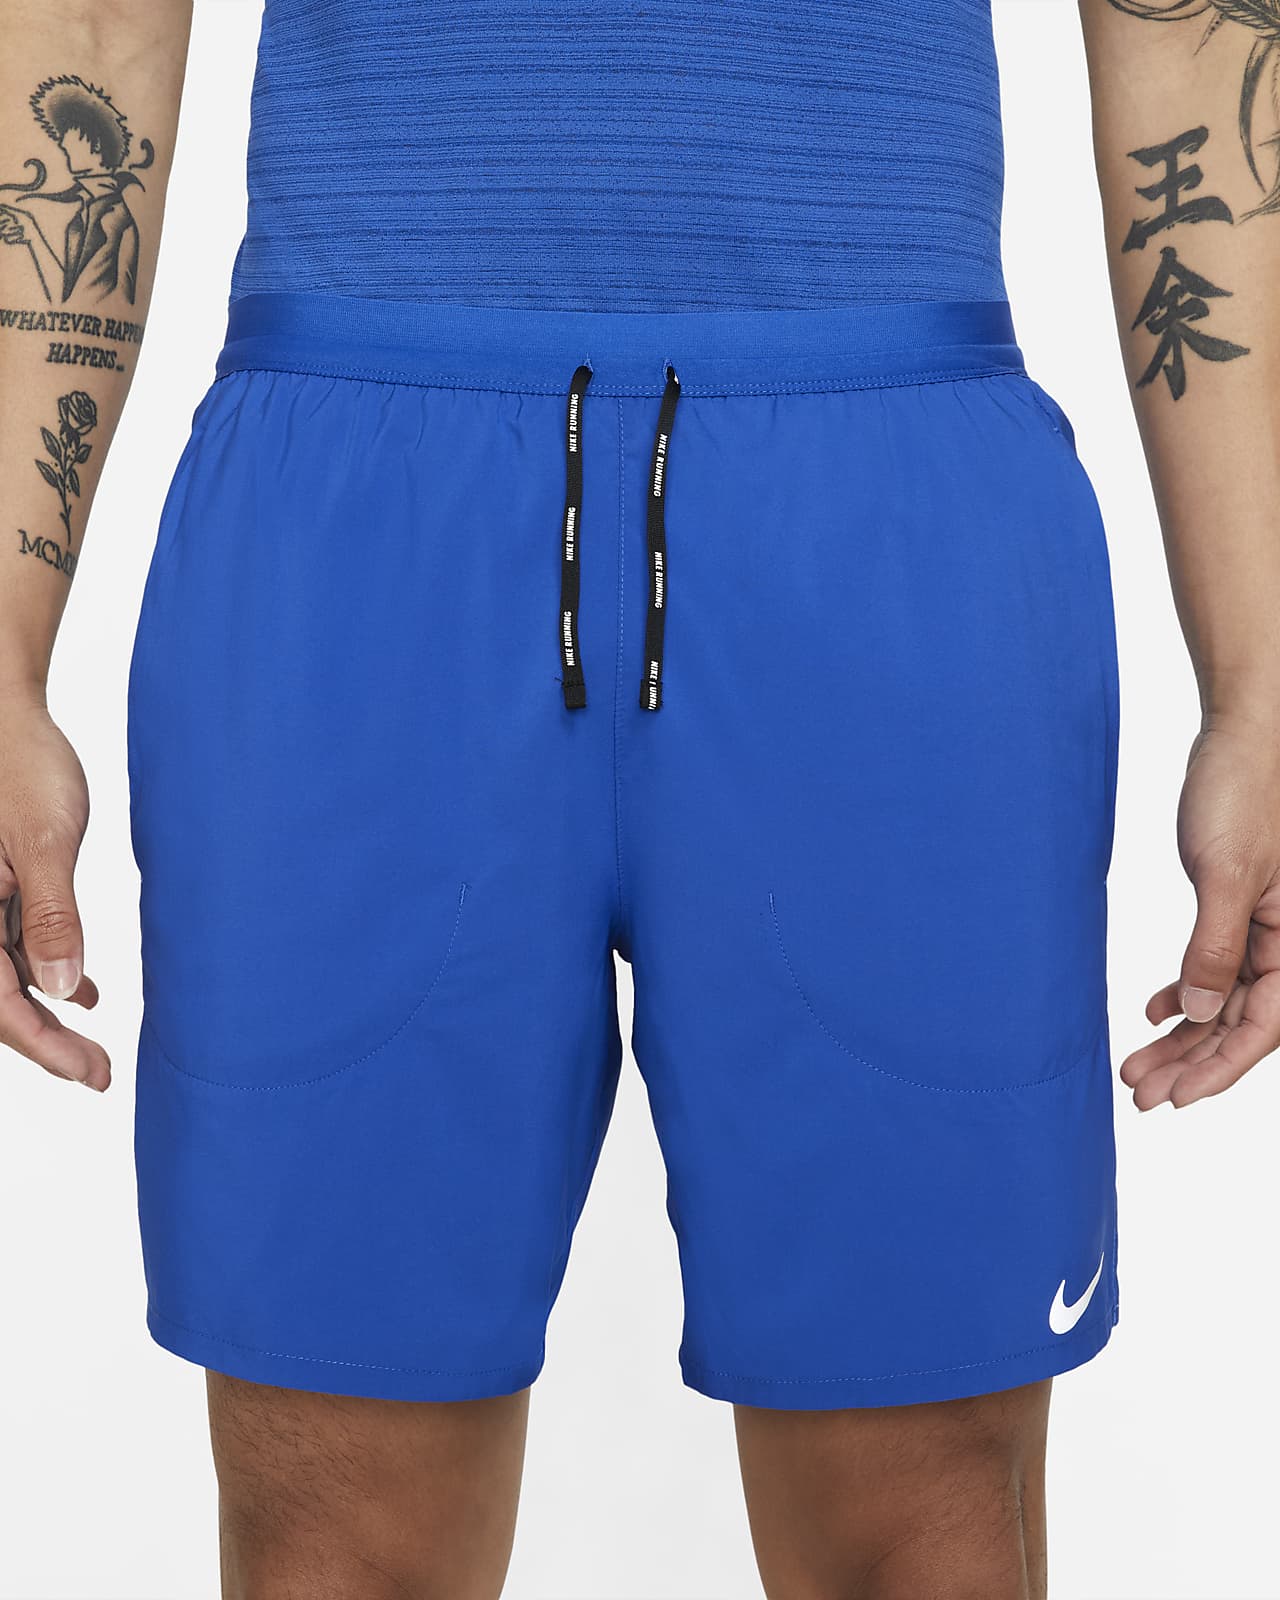 Nike Flex Stride Men's 7" Brief Shorts.